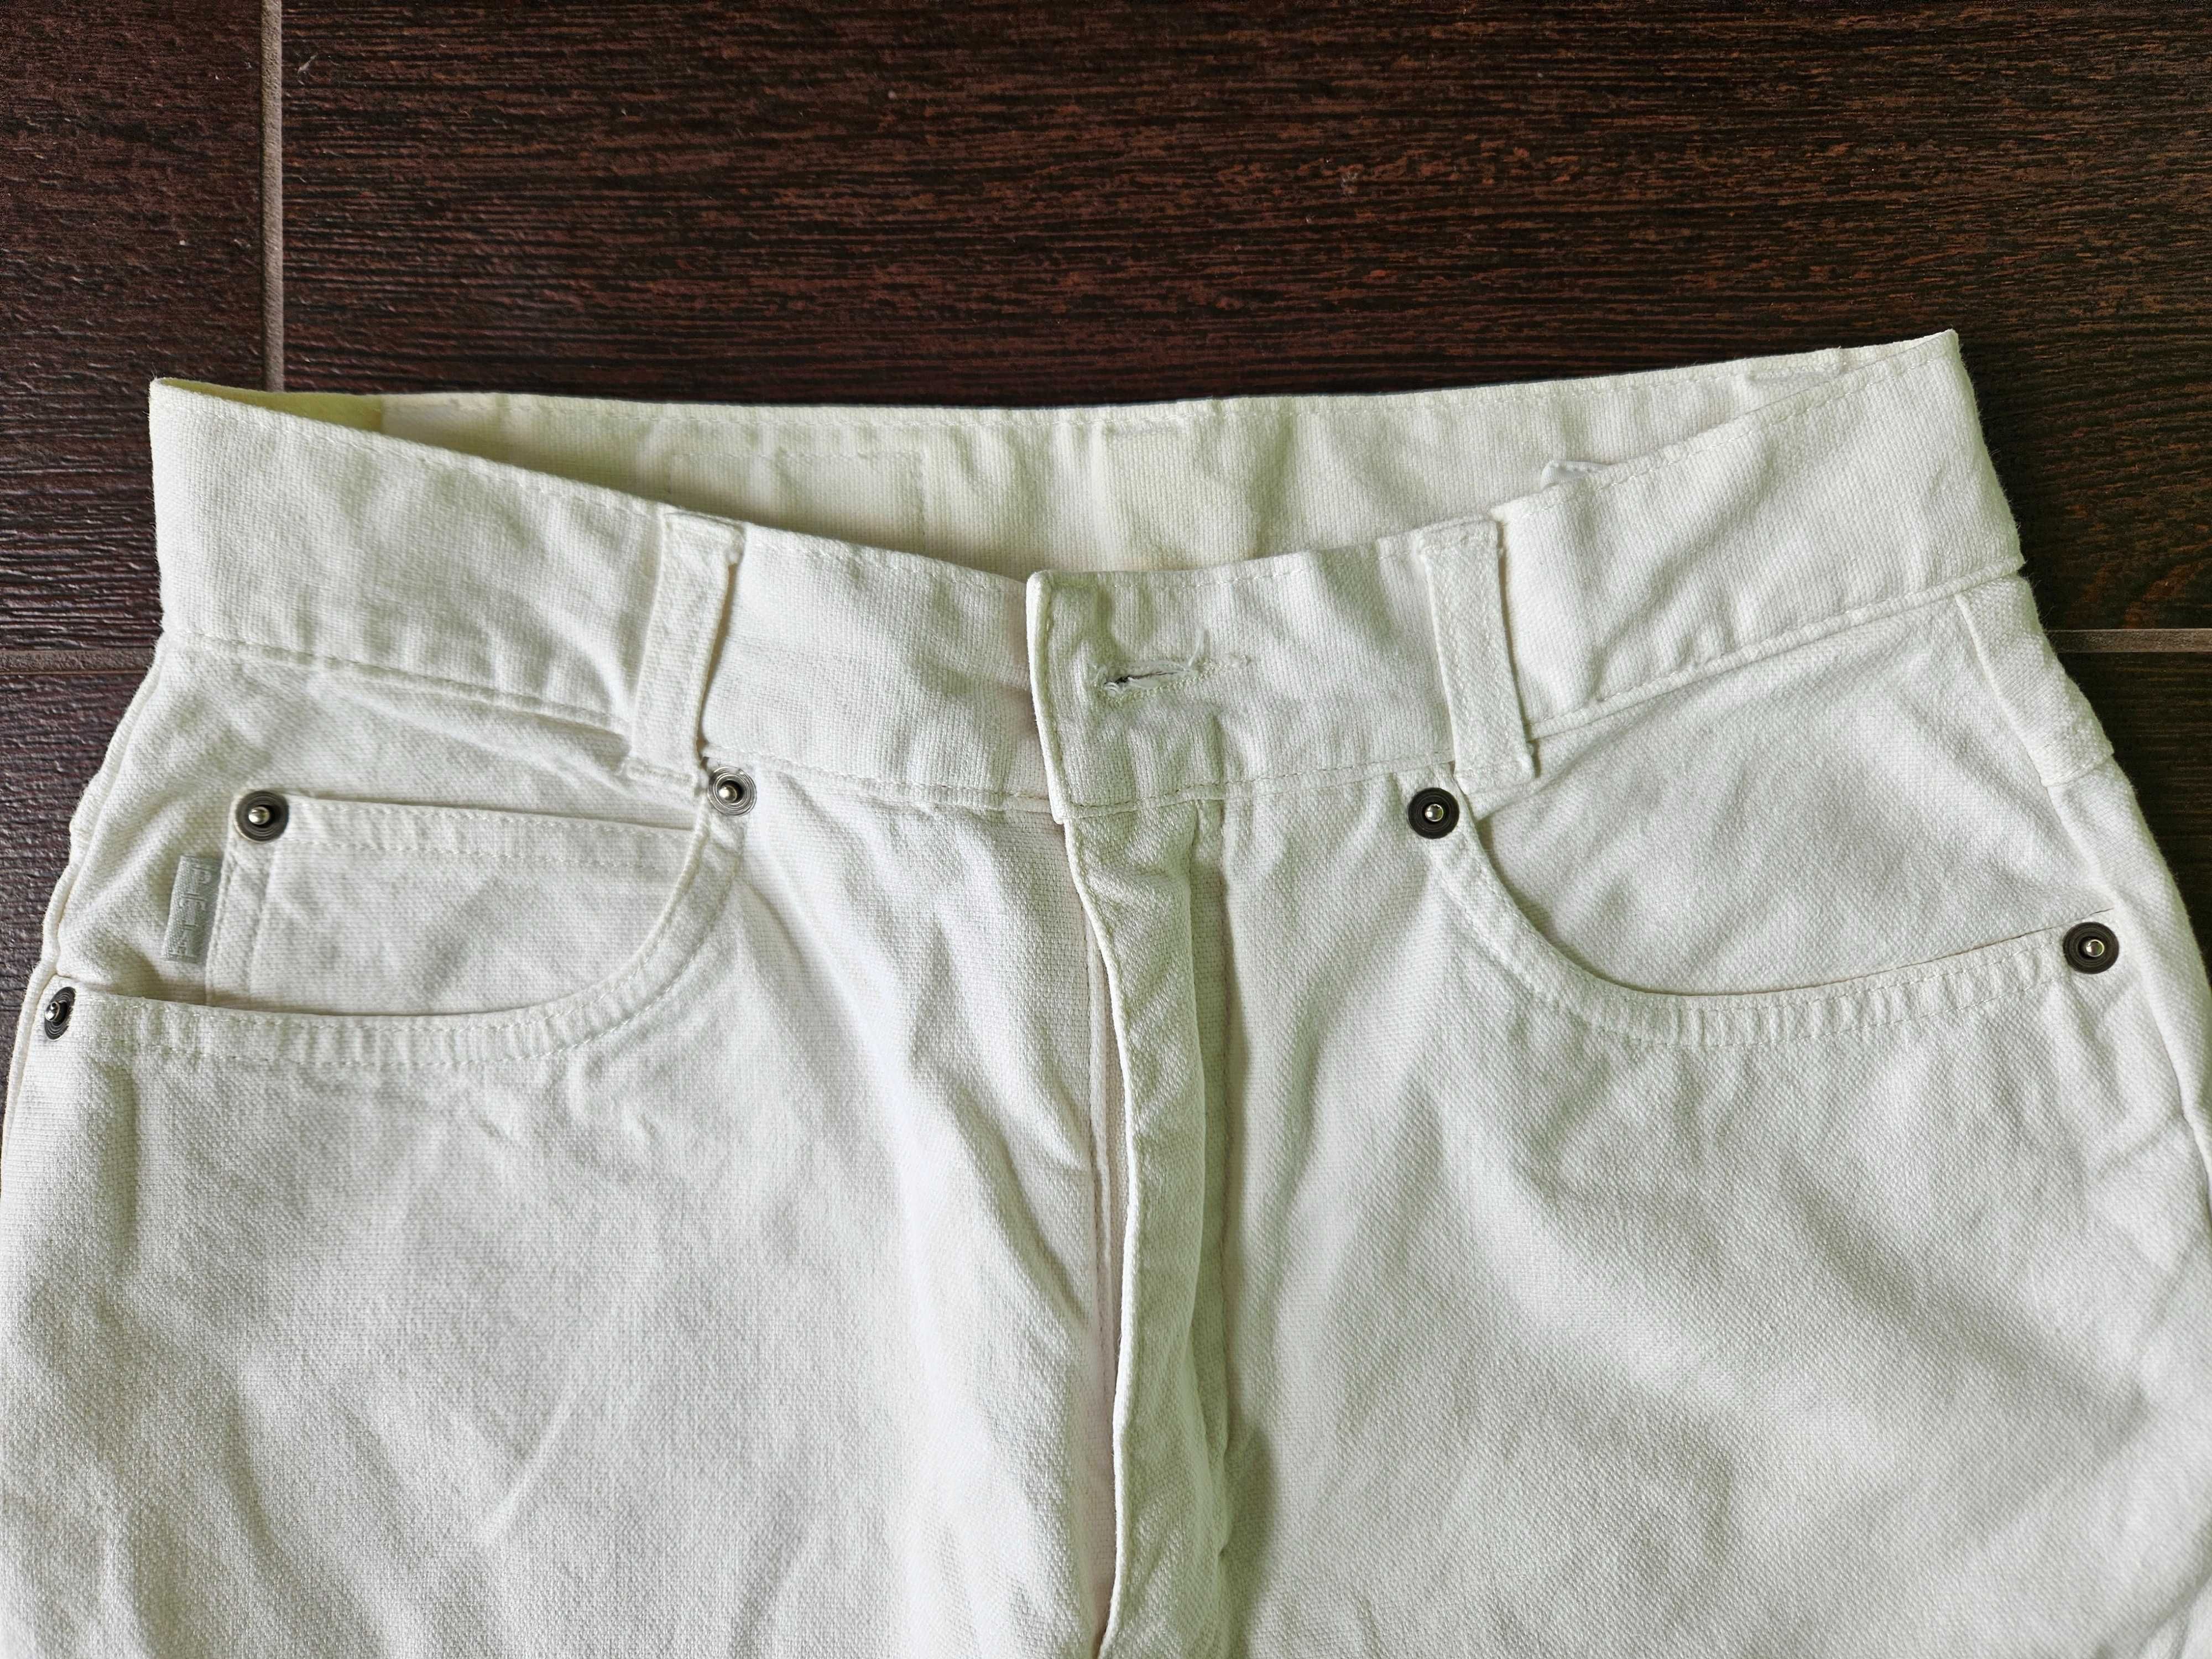 Białe/ecru proste jeansy marki PTA, pas 34, dł. 103cm